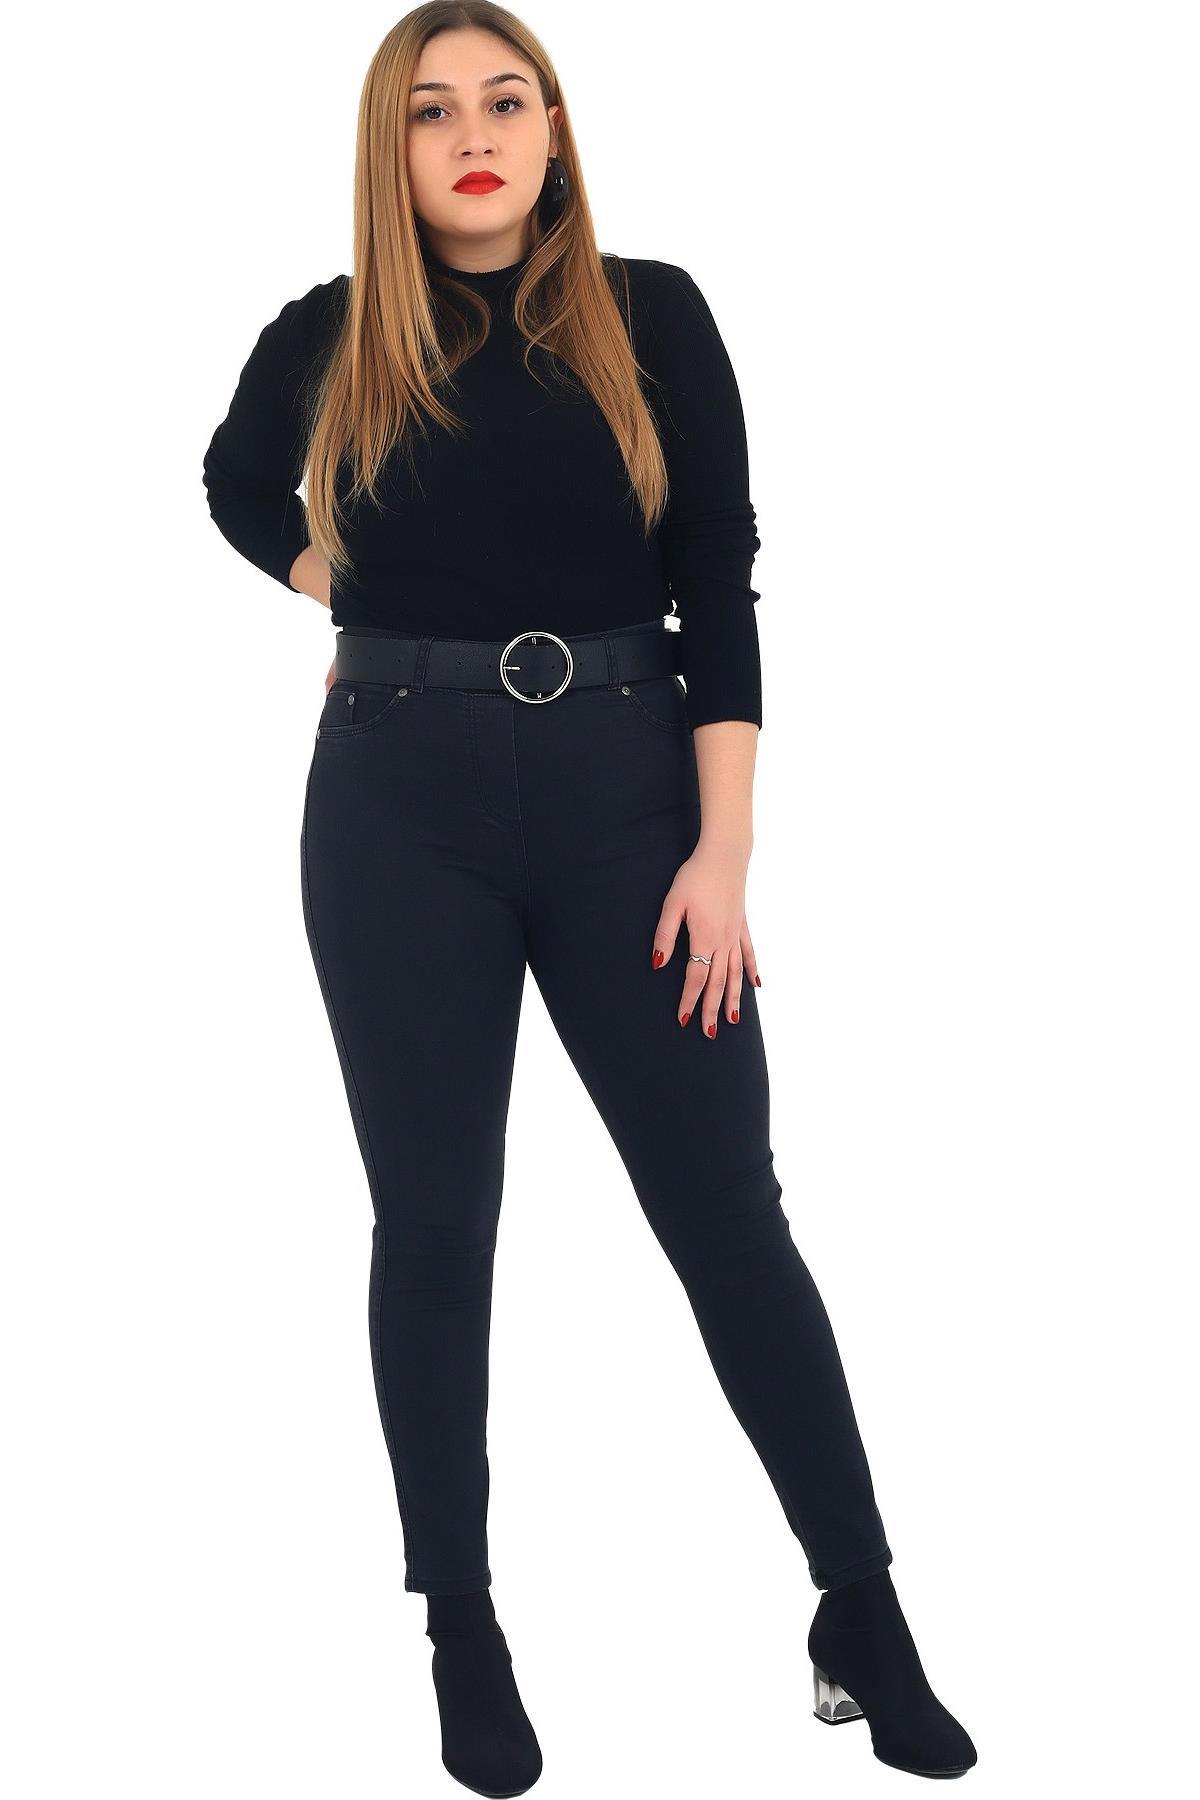 Fierte Kadın Büyük Beden Elbise Lm84021 Kadife Siyah Büyük Beden Giyim